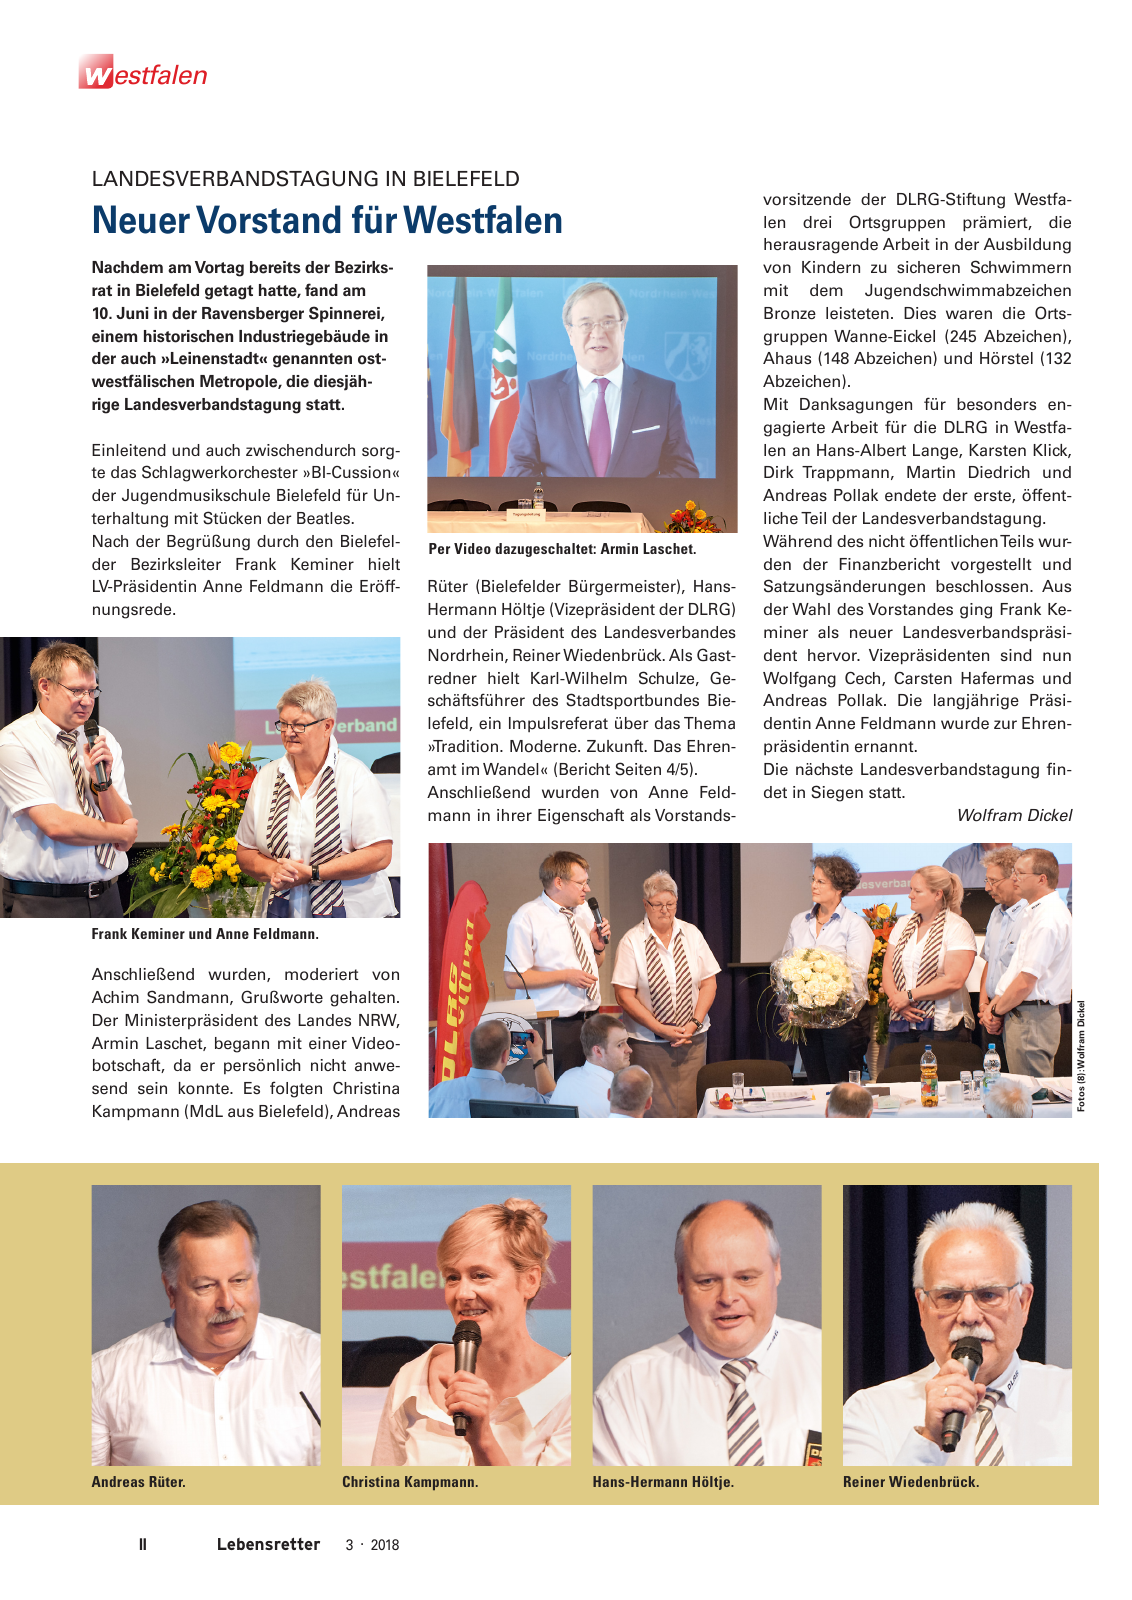 Vorschau Lebensretter 3/2018 - Regionalausgabe Westfalen Seite 4